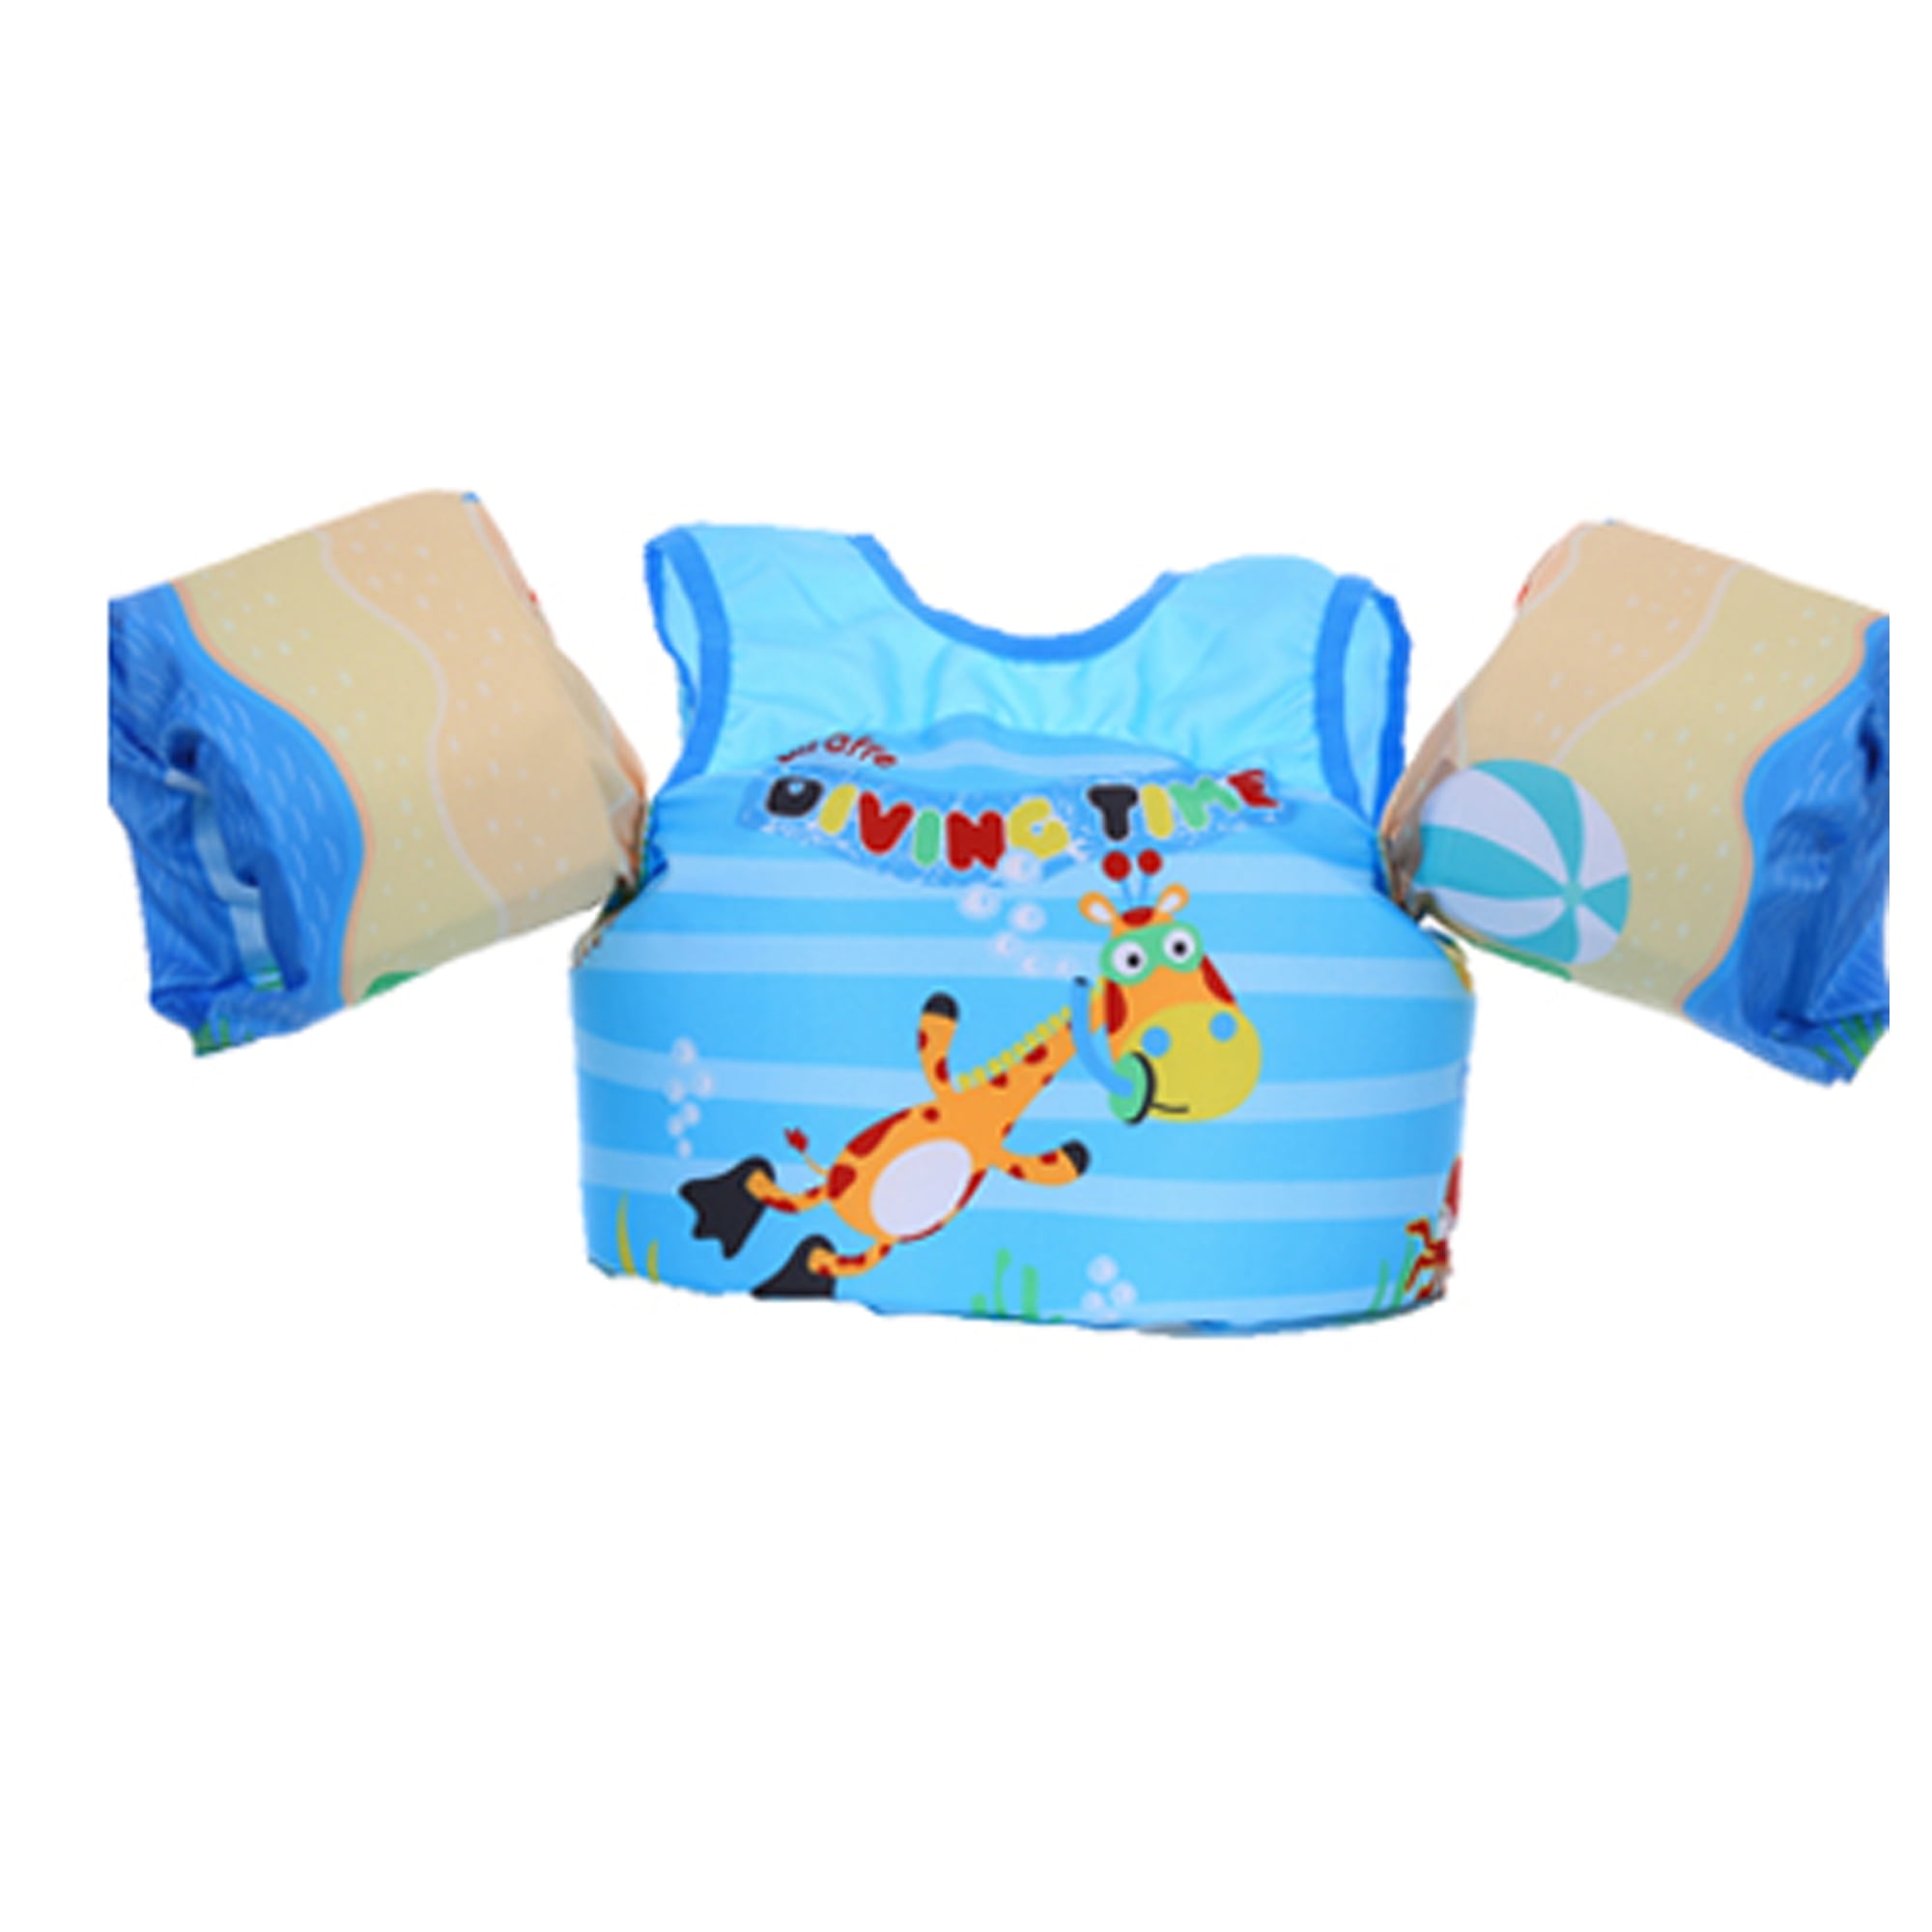 Children's Life Jackets Puddle Jumper Life Jacket Vest Kids Swim Arm Bands Float 